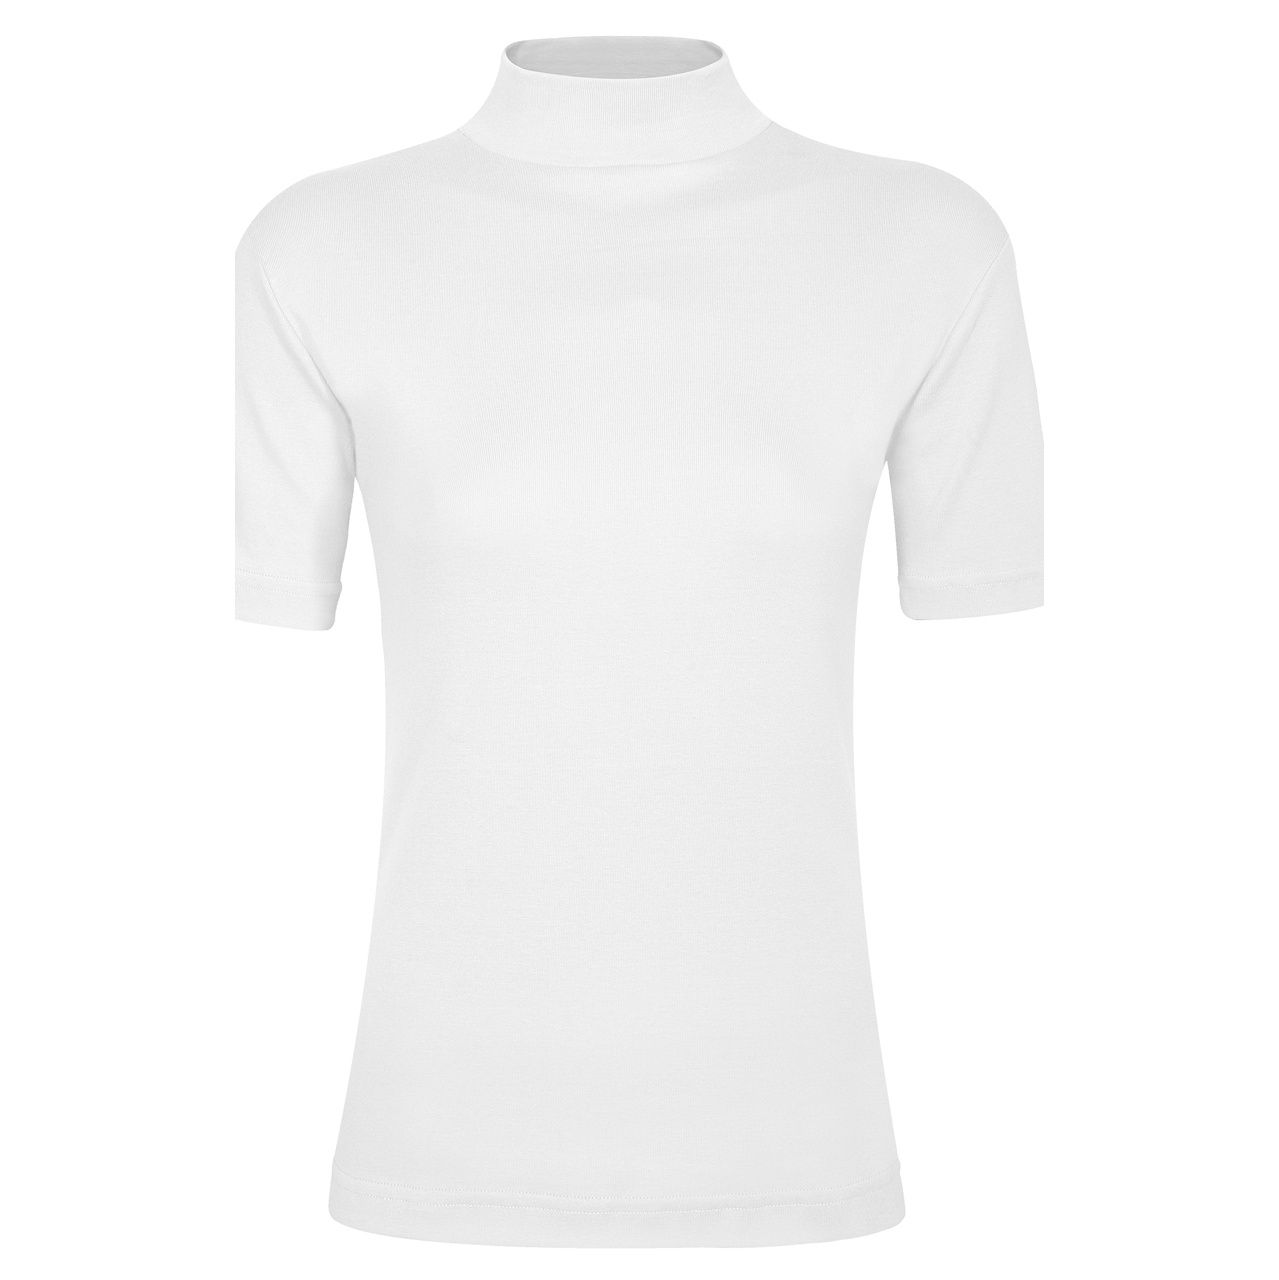 تی شرت زنانه ساروک مدل TZY5cm17 رنگ سفید -  - 1